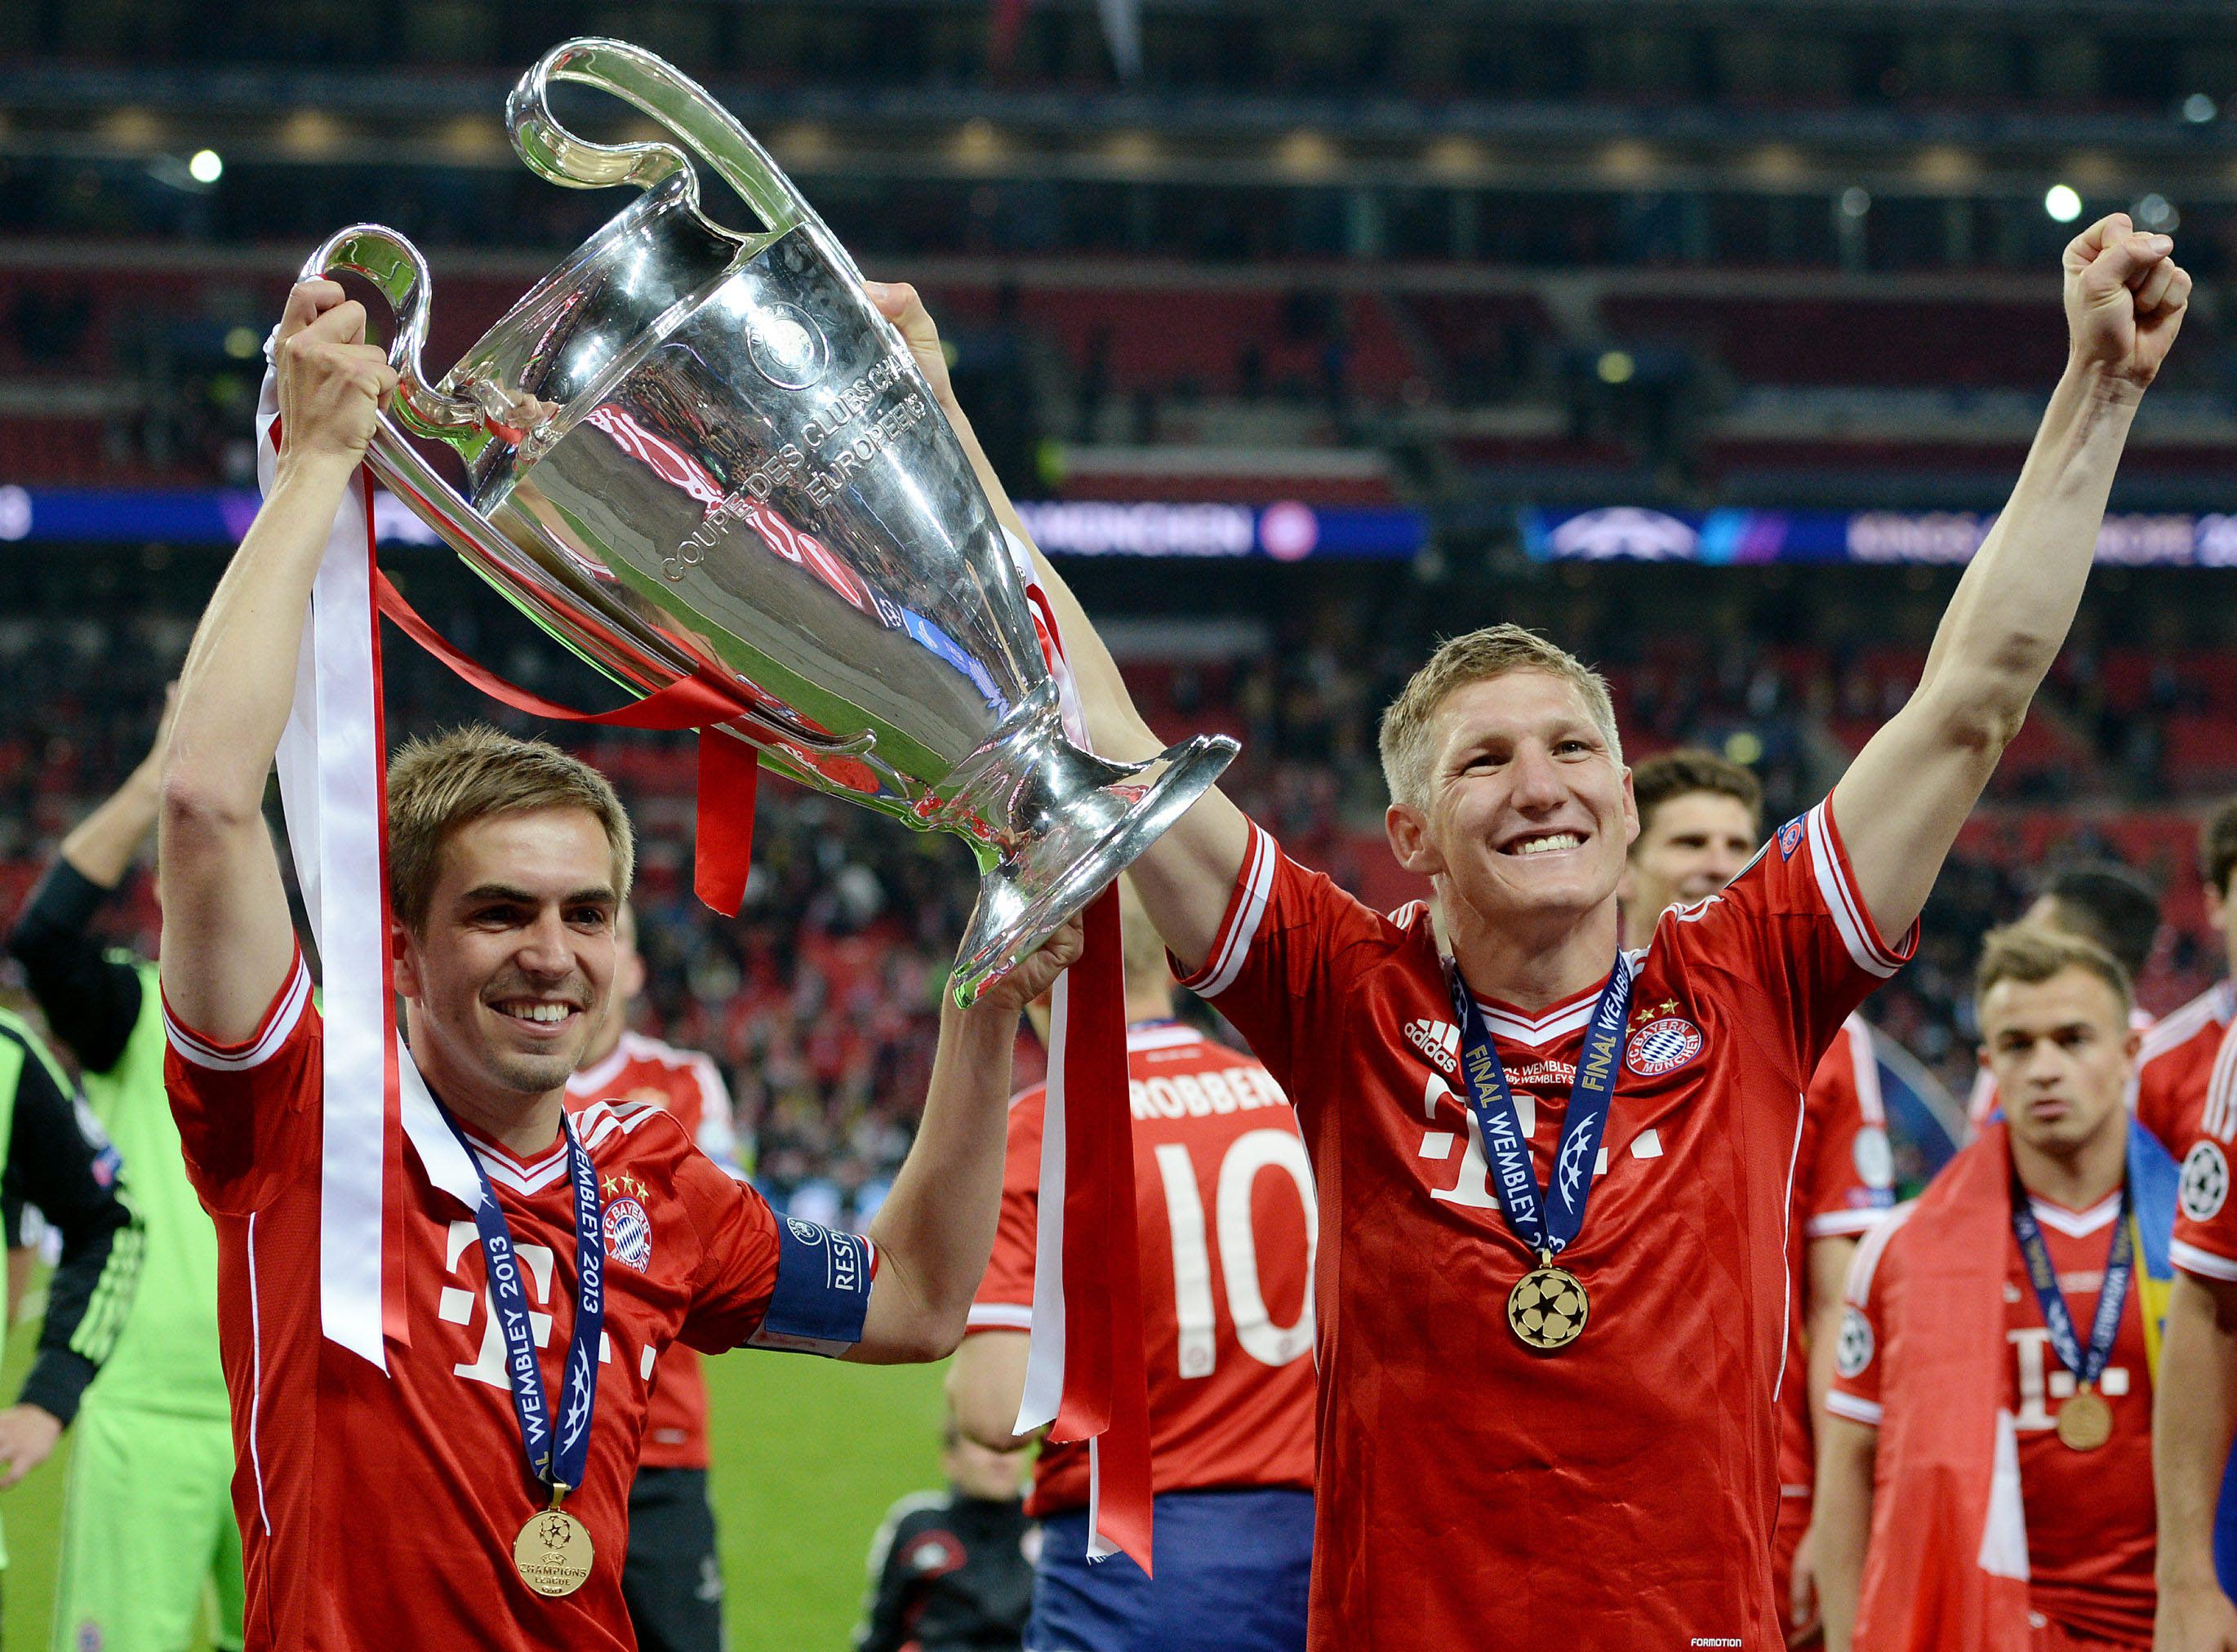 Bastian Schweinsteiger Celebrating And Holding Trophy